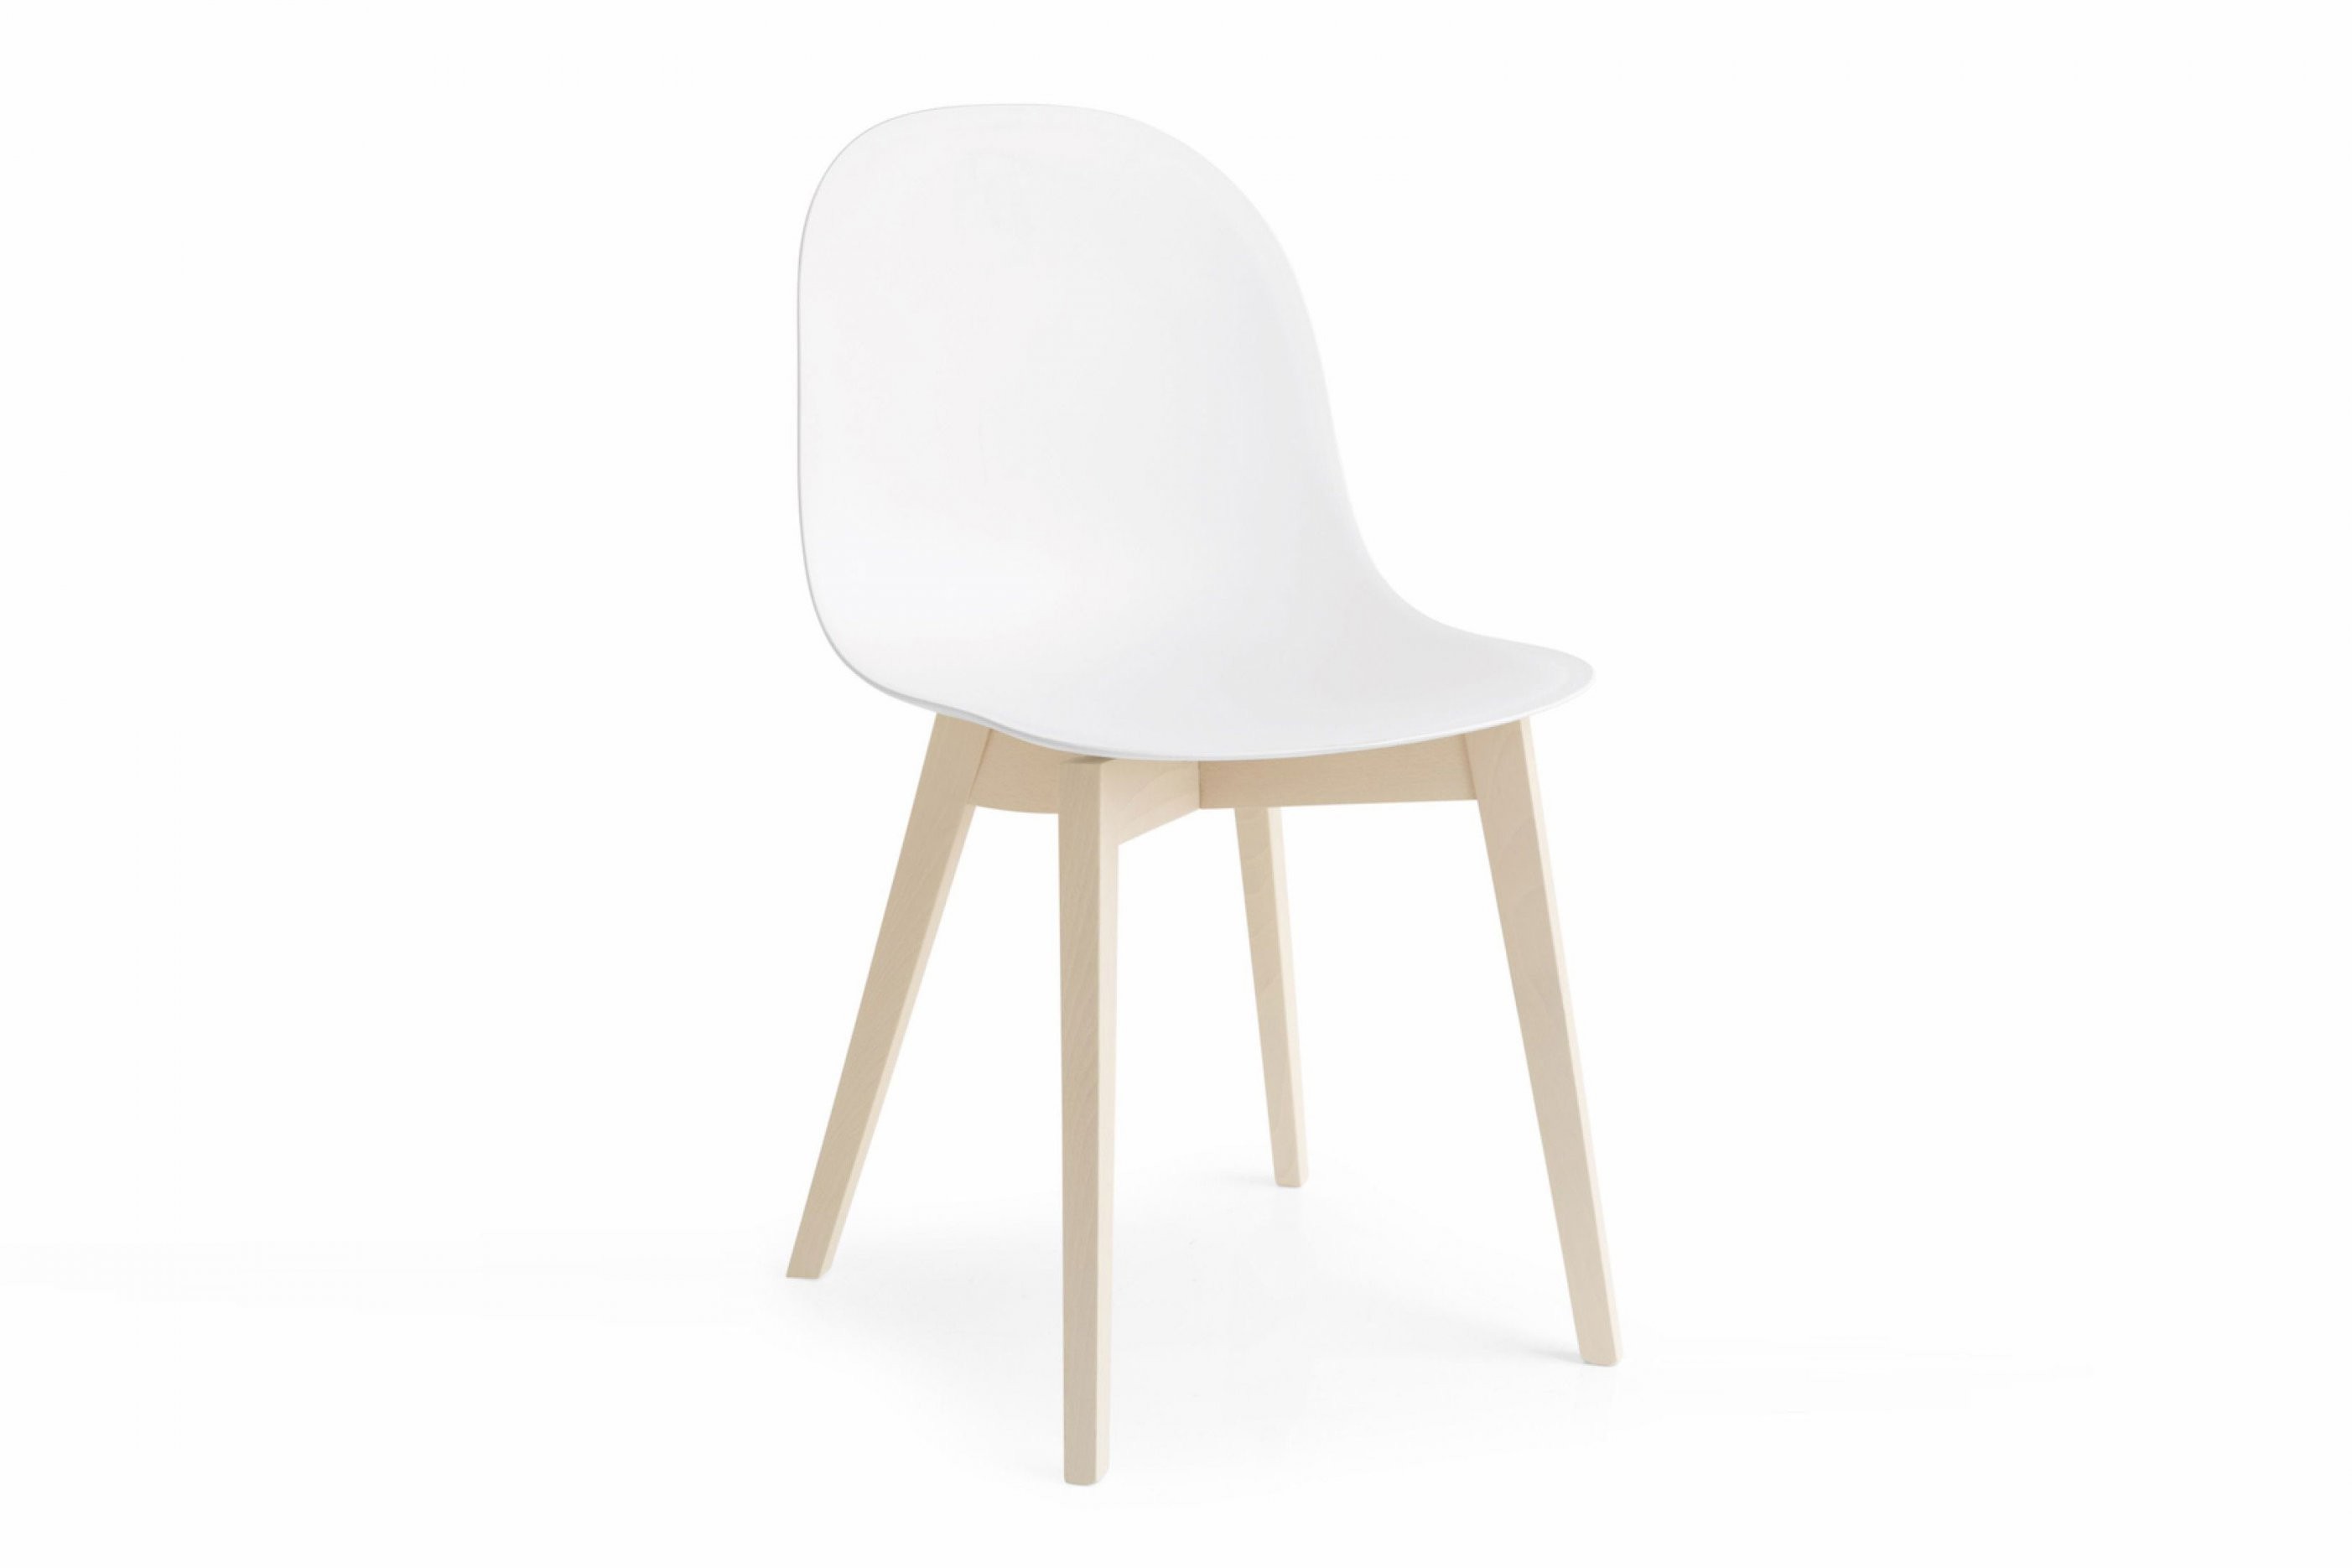 Skandinavische Stühle  Möbel Letz  Ihr Onlineshop von Skandinavische Stühle Klassiker Bild